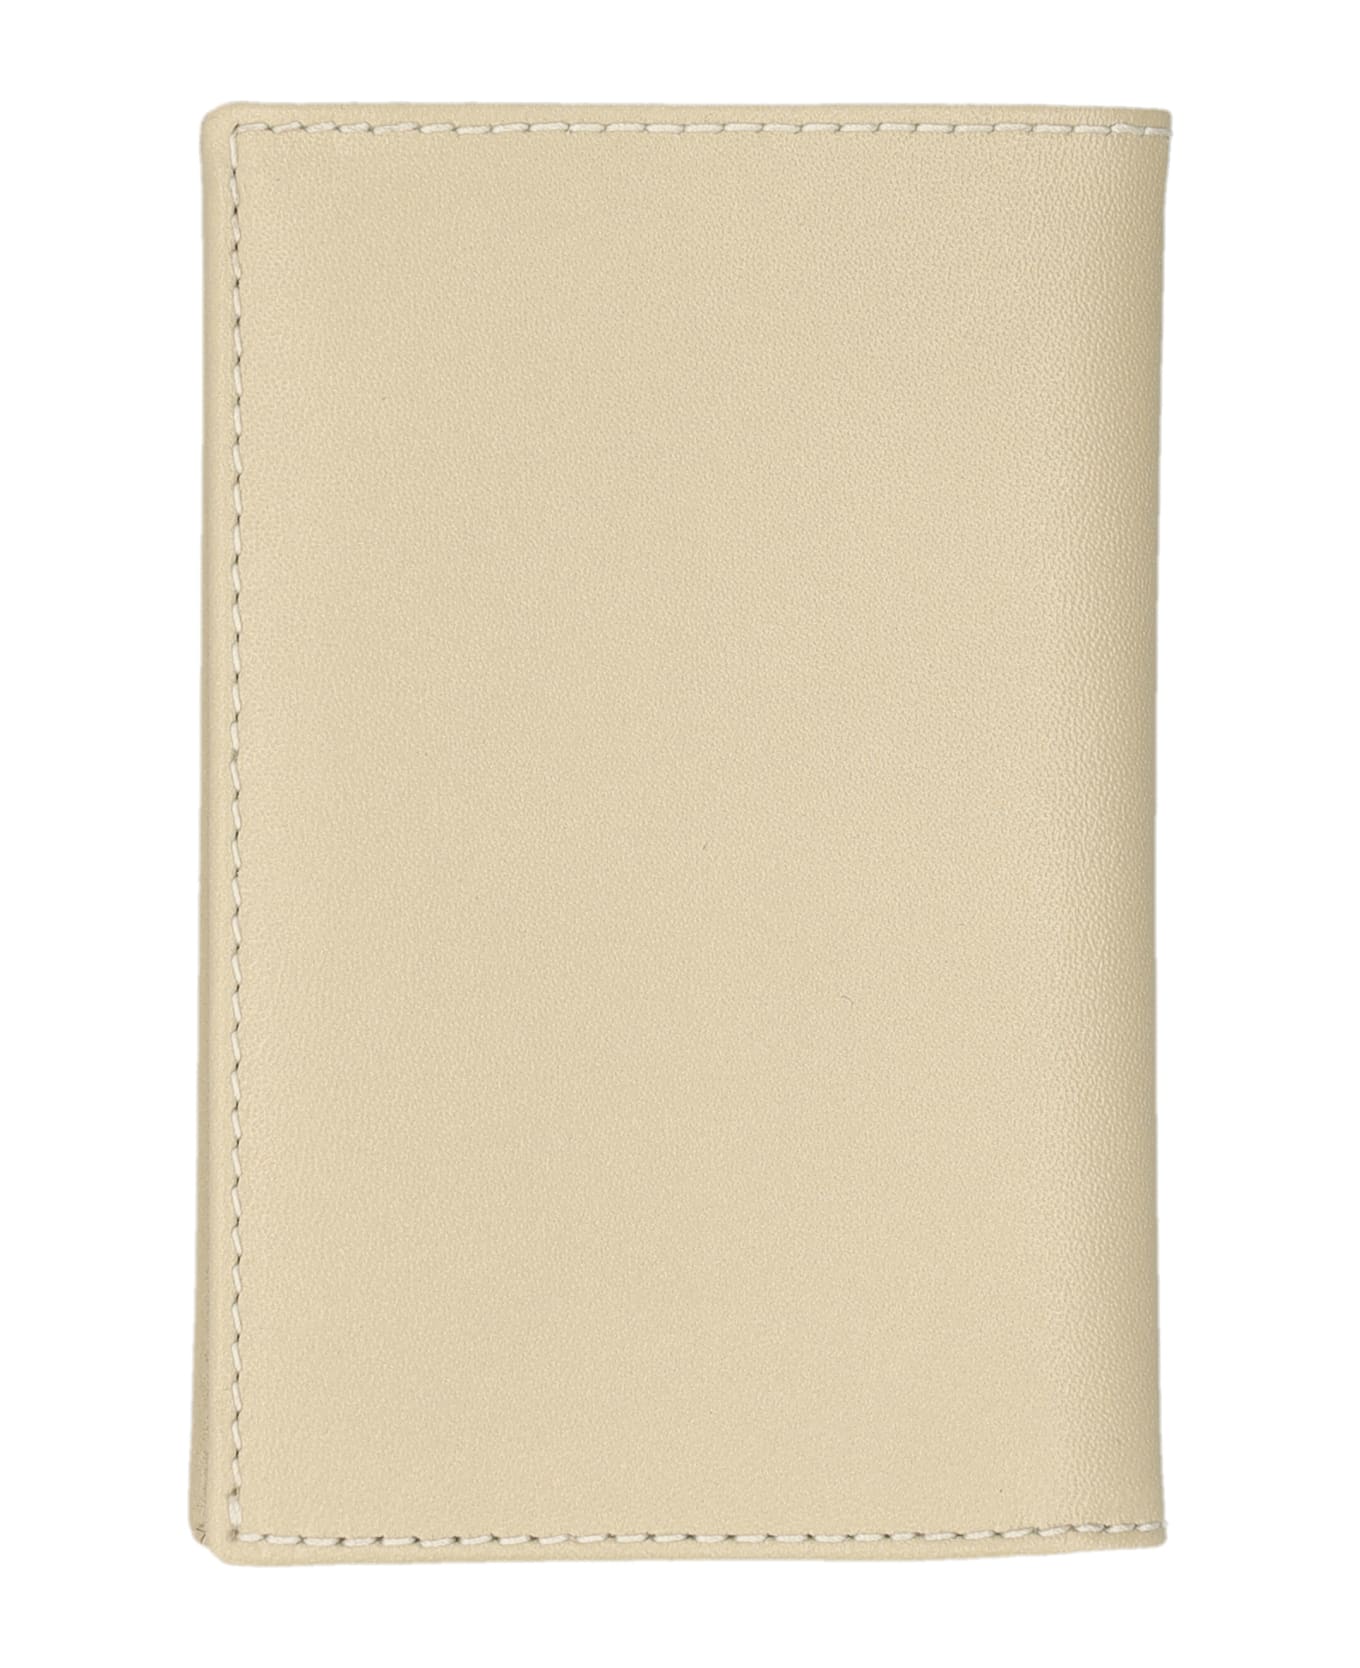 Comme des Garçons Wallet Classic Bifold Wallet - OFF WHITE 財布